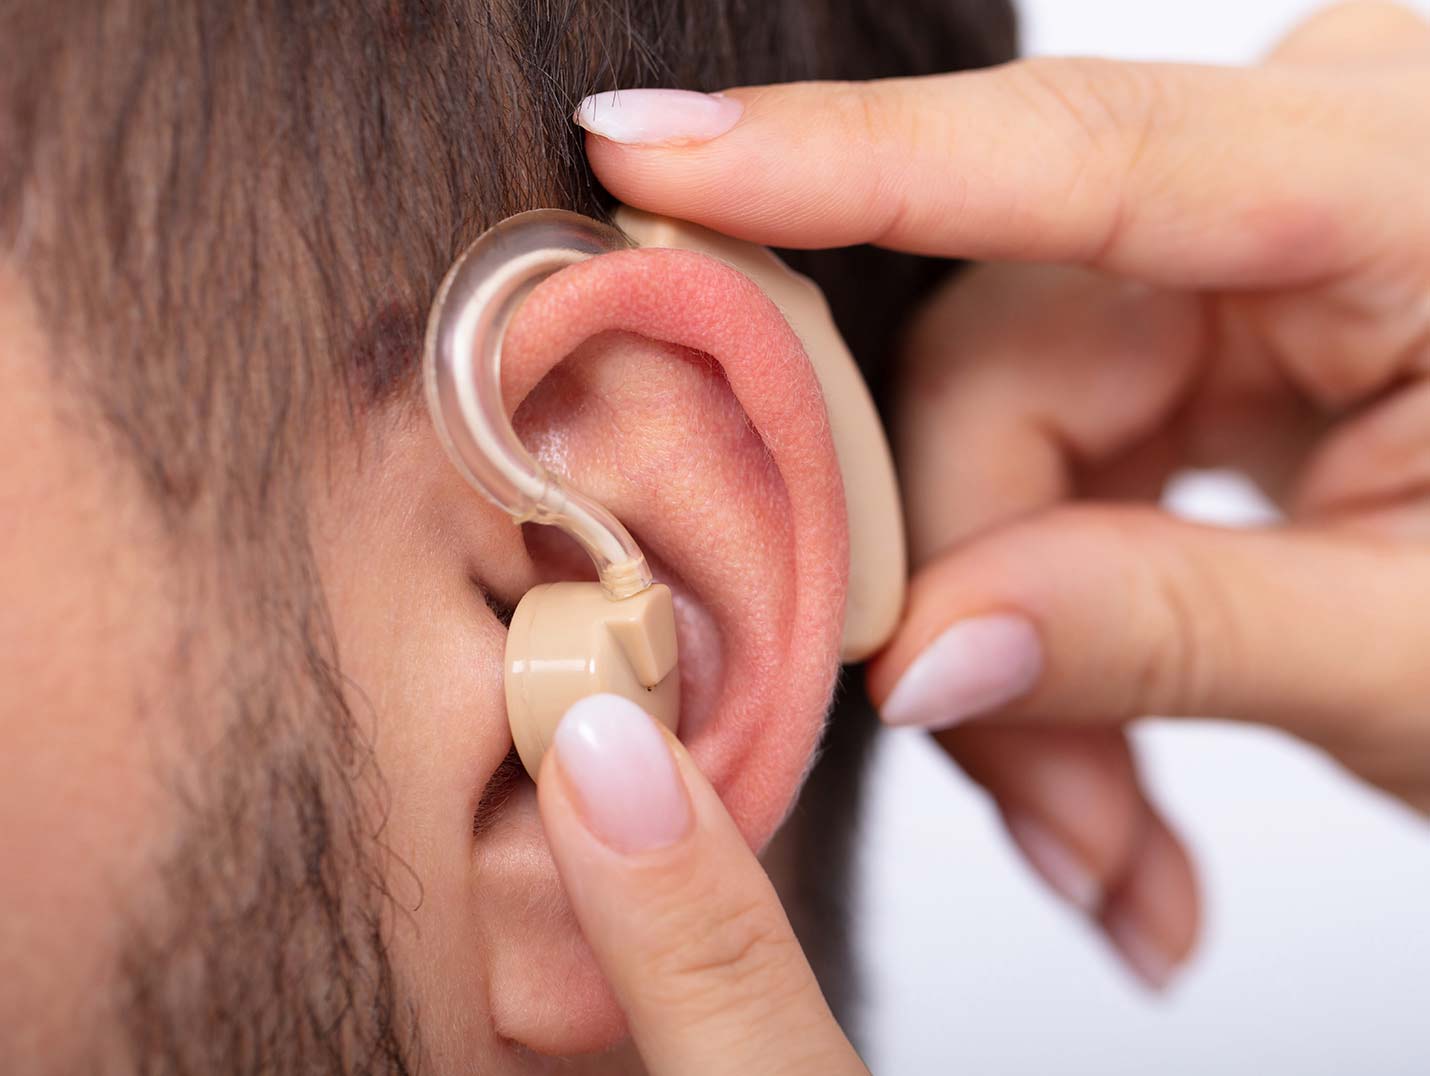 Una mano colocando un aparato auditivo de color café en la oreja de un paciente